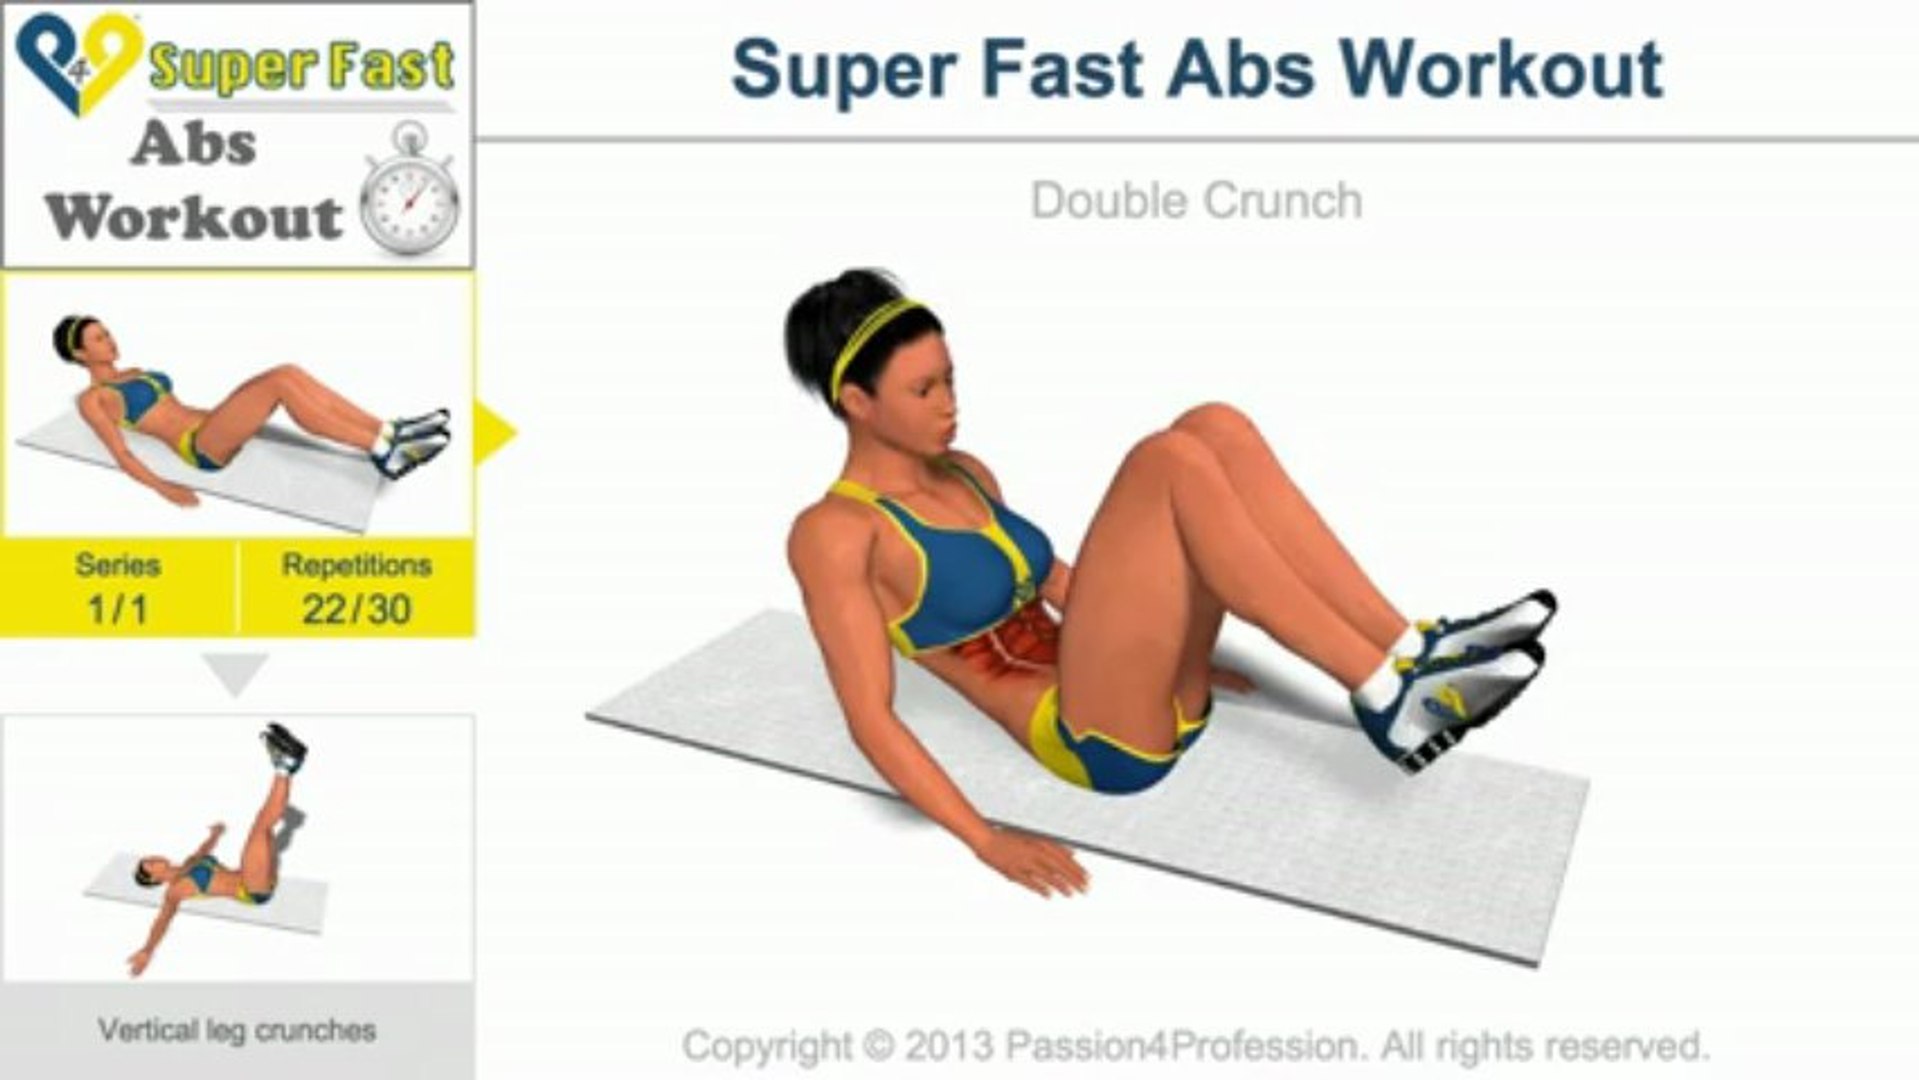 Пресс 1 уровень. P4p пресс 1 уровень. Vertical Leg Crunches упражнение. ABS Workout Level 1. P4p ABS Workout Level 1.